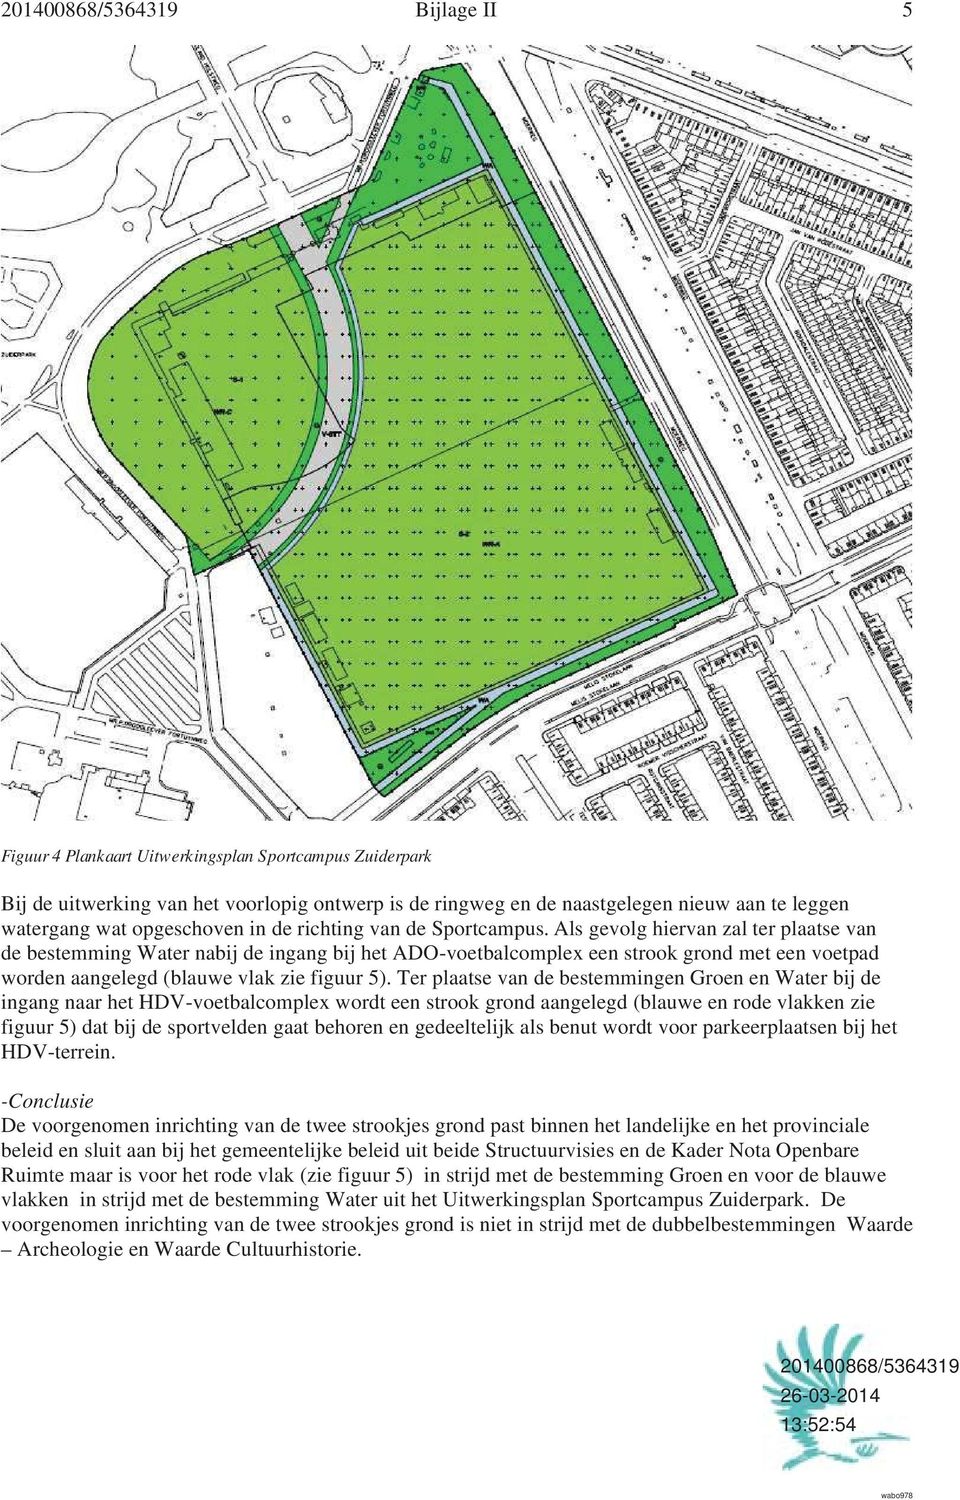 Als gevolg hiervan zal ter plaatse van de bestemming Water nabij de ingang bij het ADO-voetbalcomplex een strook grond met een voetpad worden aangelegd (blauwe vlak zie figuur 5).